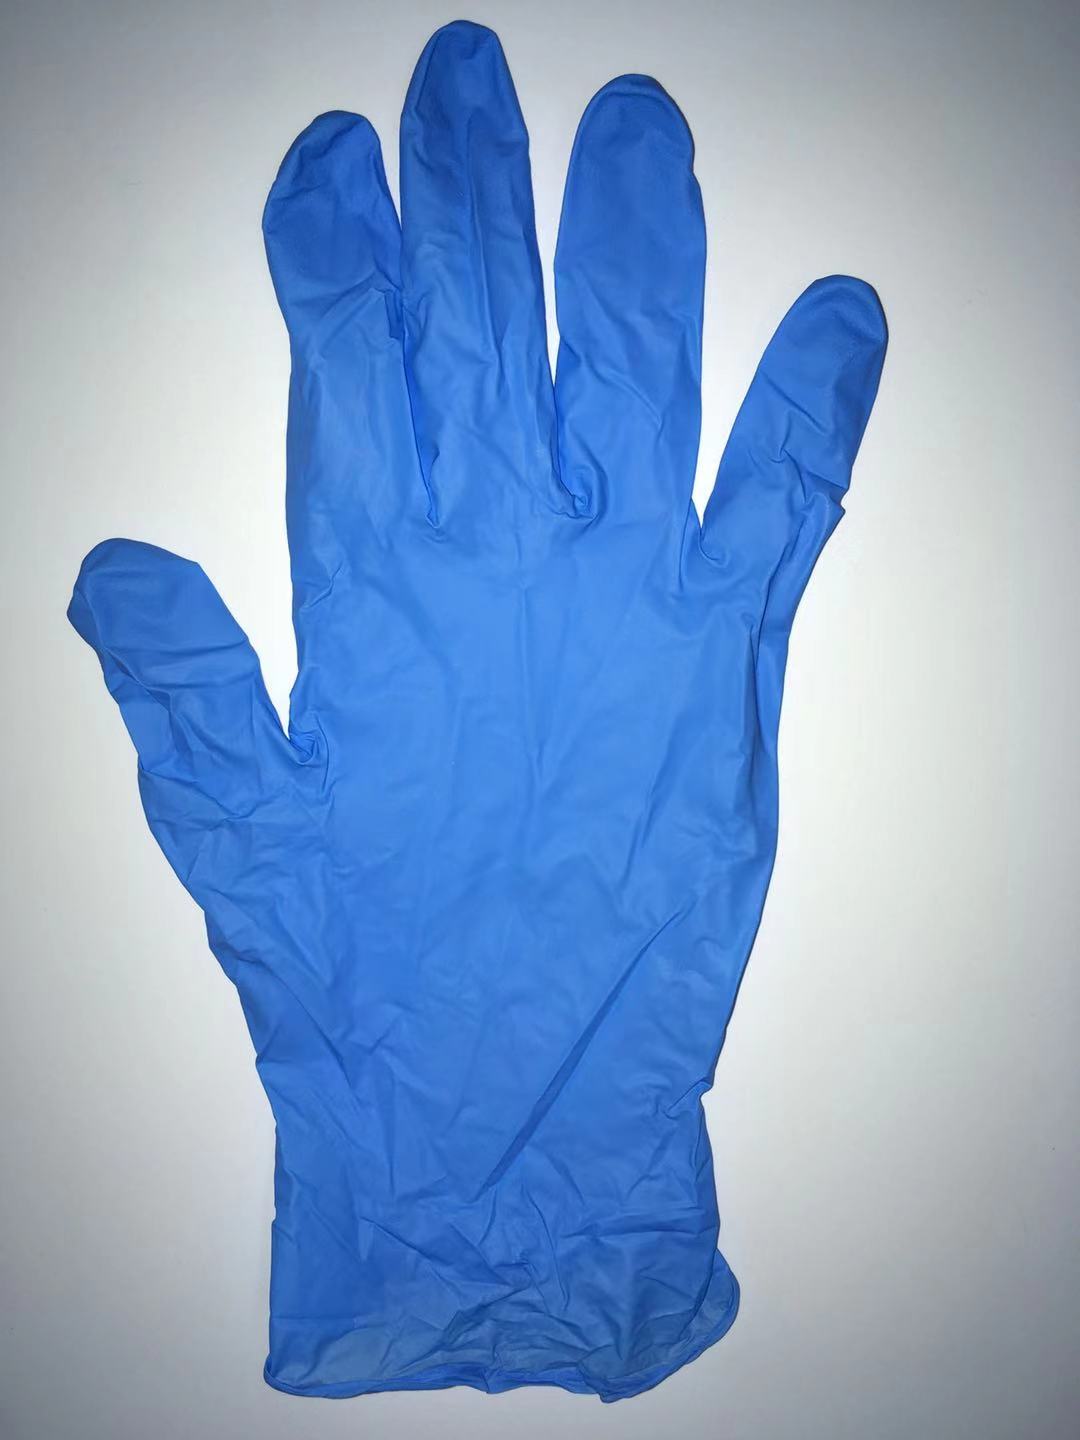 なぜ私は職場で使い捨て手袋を使うべきですか？